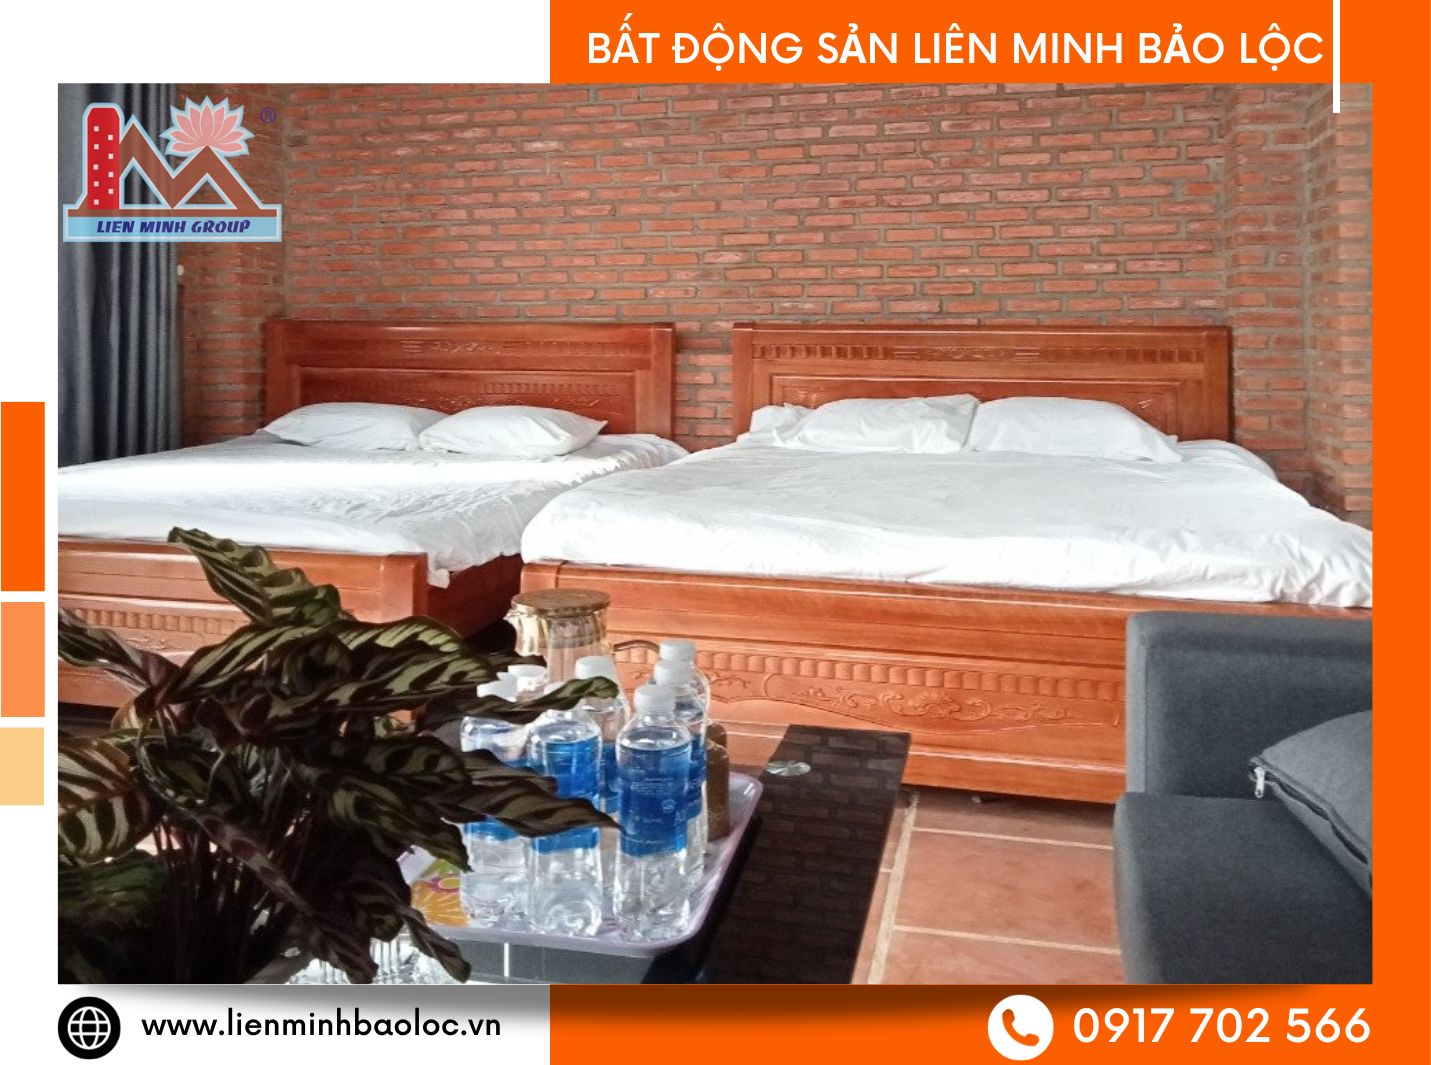 Bán khu nghỉ dưỡng đầy đủ trang thiết bị ở Đại Lào Bảo Lộc